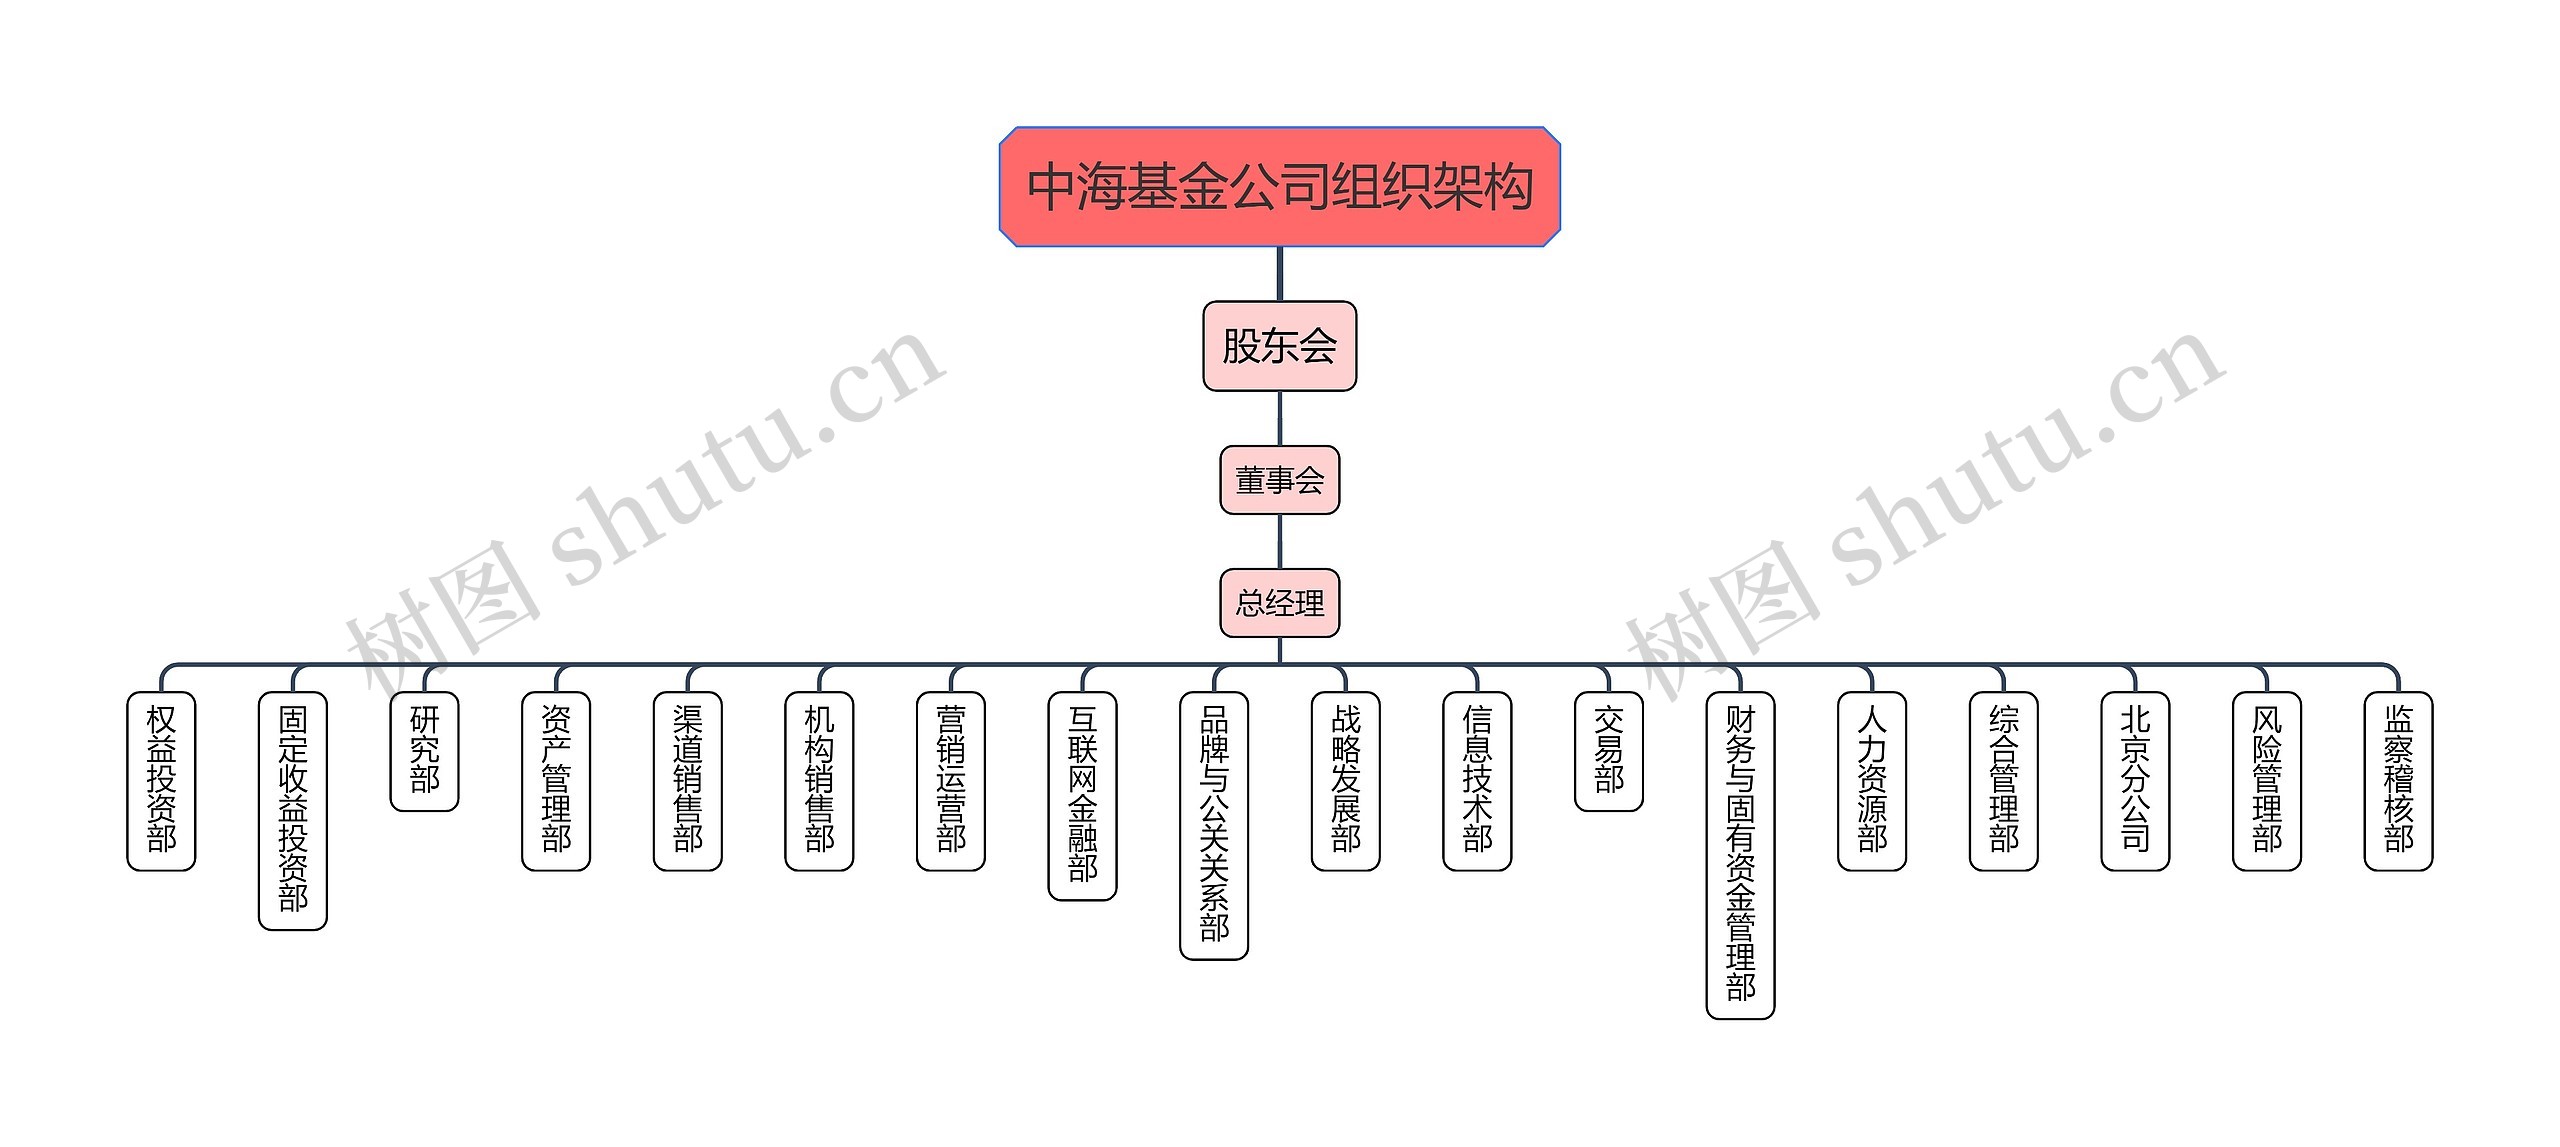 中海基金公司组织架构思维导图